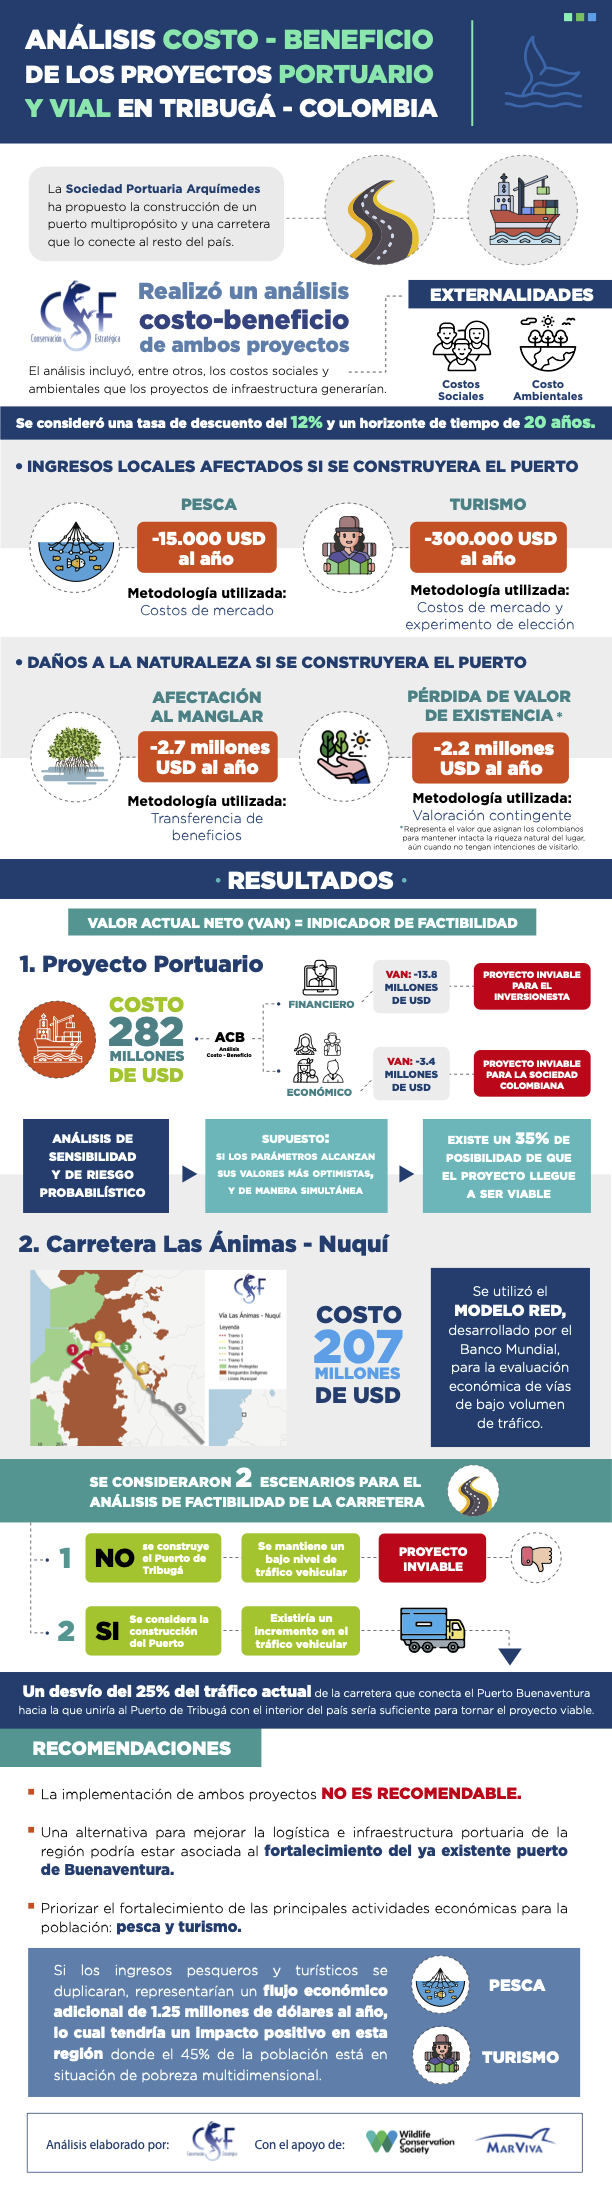 Análisis Costo Beneficio de los proyectos portuario y vial en Tribugá Colombia - Infografía